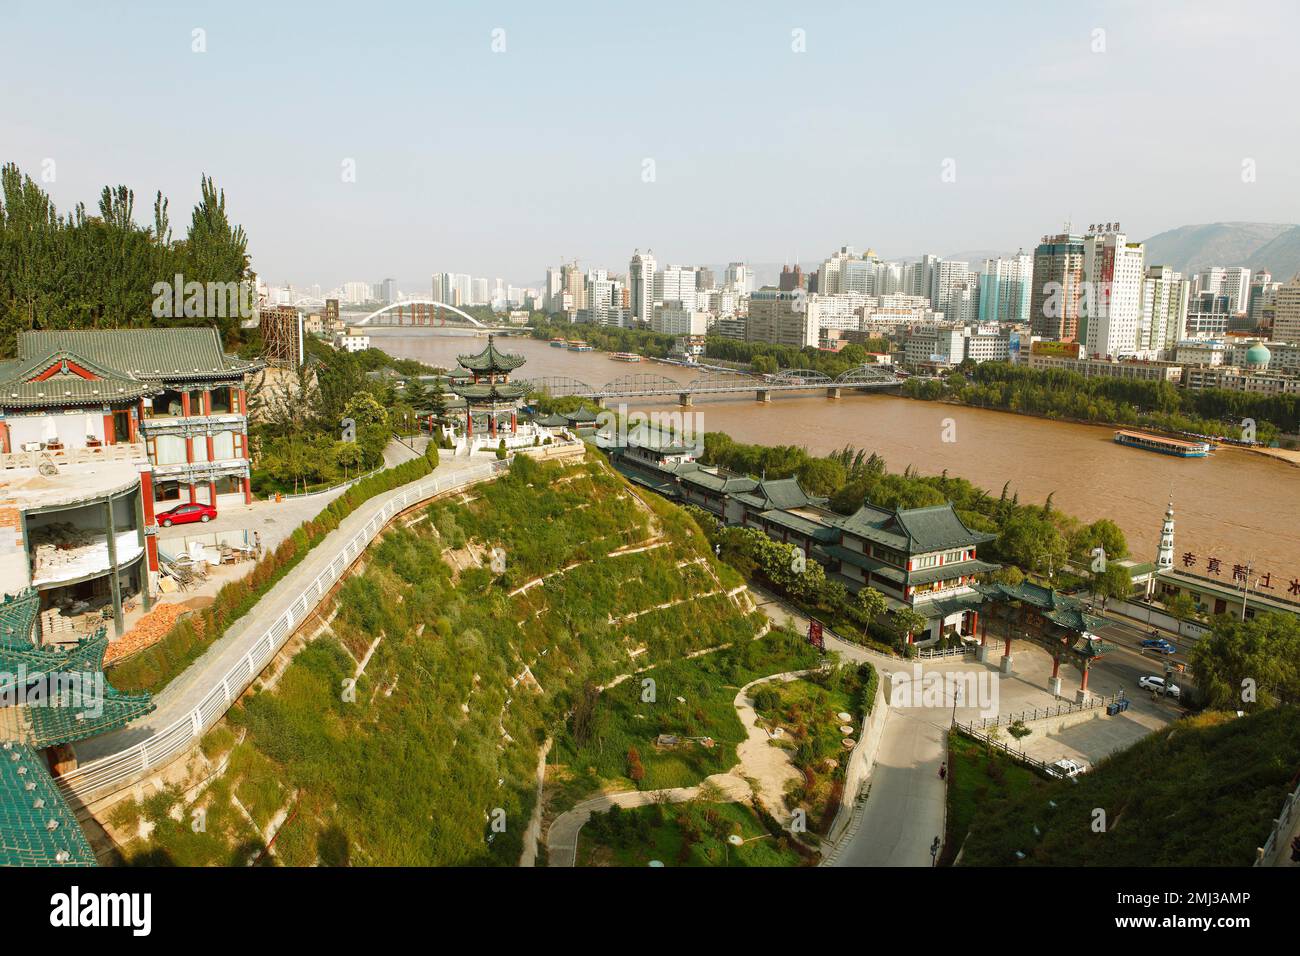 Lanzhou on the Yellow River, Lanzhou, Gansu Province, China Stock Photo